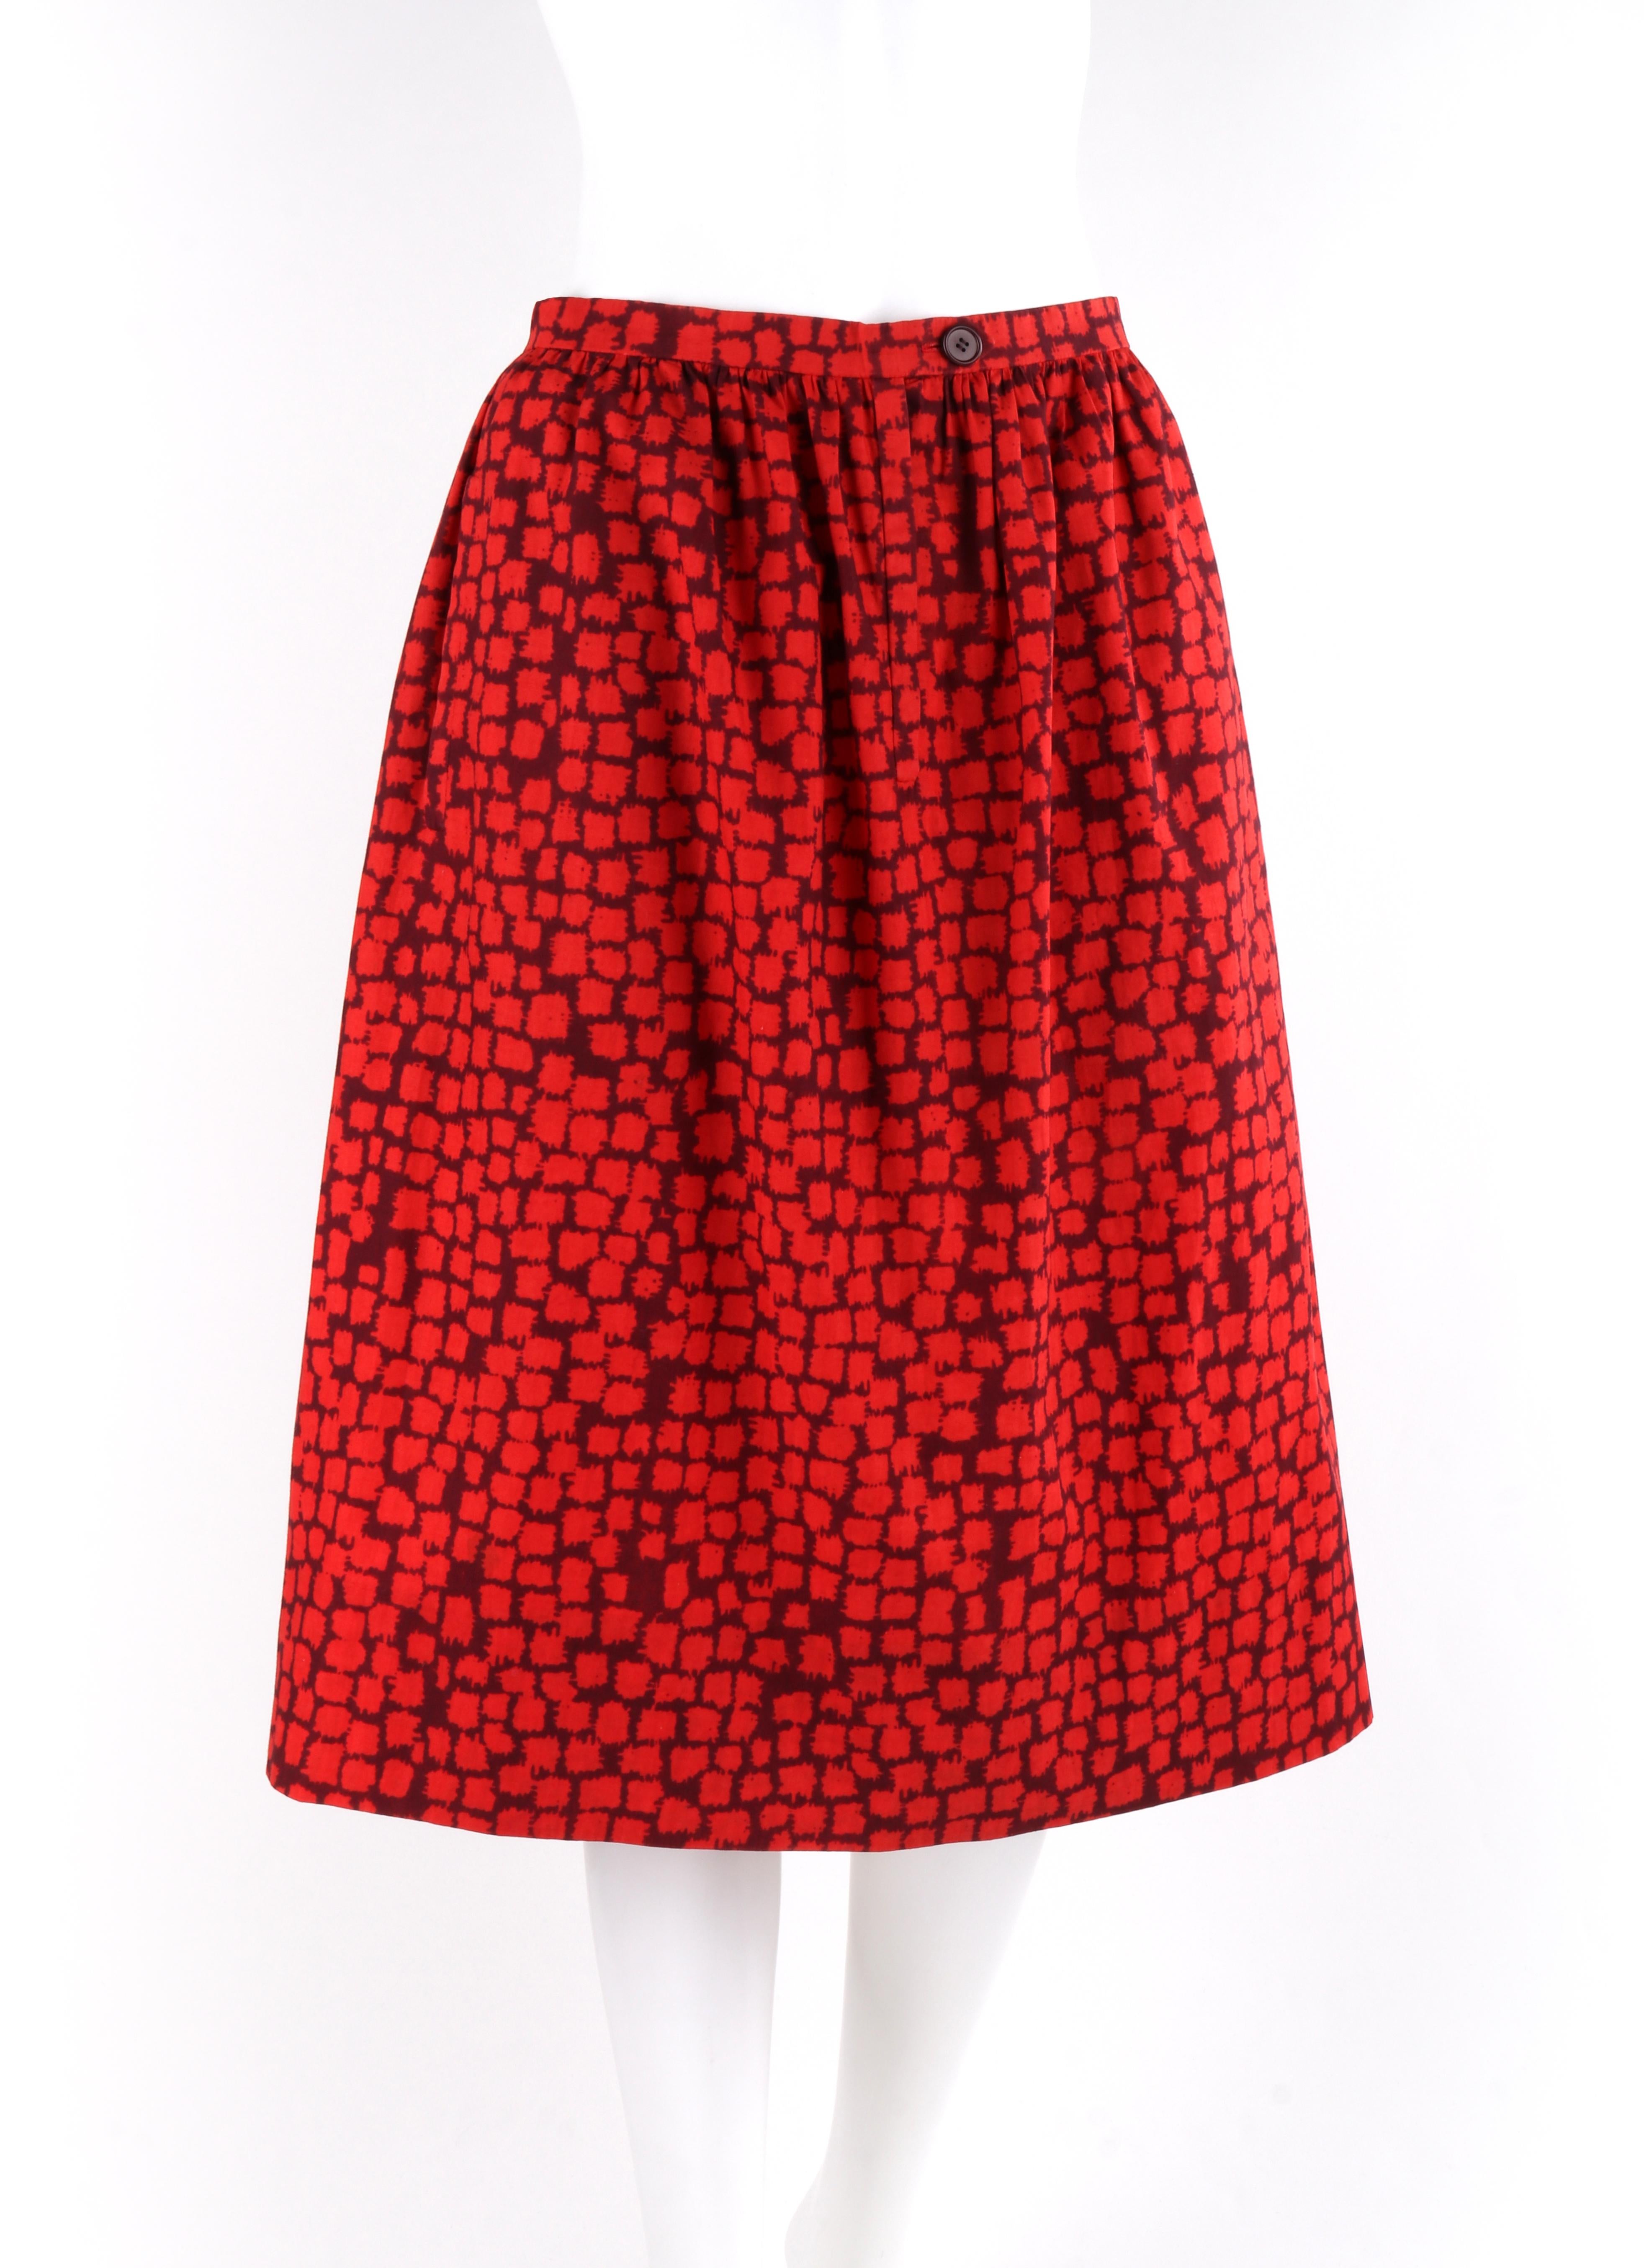 GIVENCHY c.1970's Couture Red Burgundy Geometric Gathered Dirndl / Tea Length Skirt Numbered

Circa : 1970's 
Étiquette(s) : Givenchy
Créateur : Hubert de Givenchy / #80086
Style : Jupe plissée longueur thé dirndl
Couleur(s) : Des nuances de rouge,